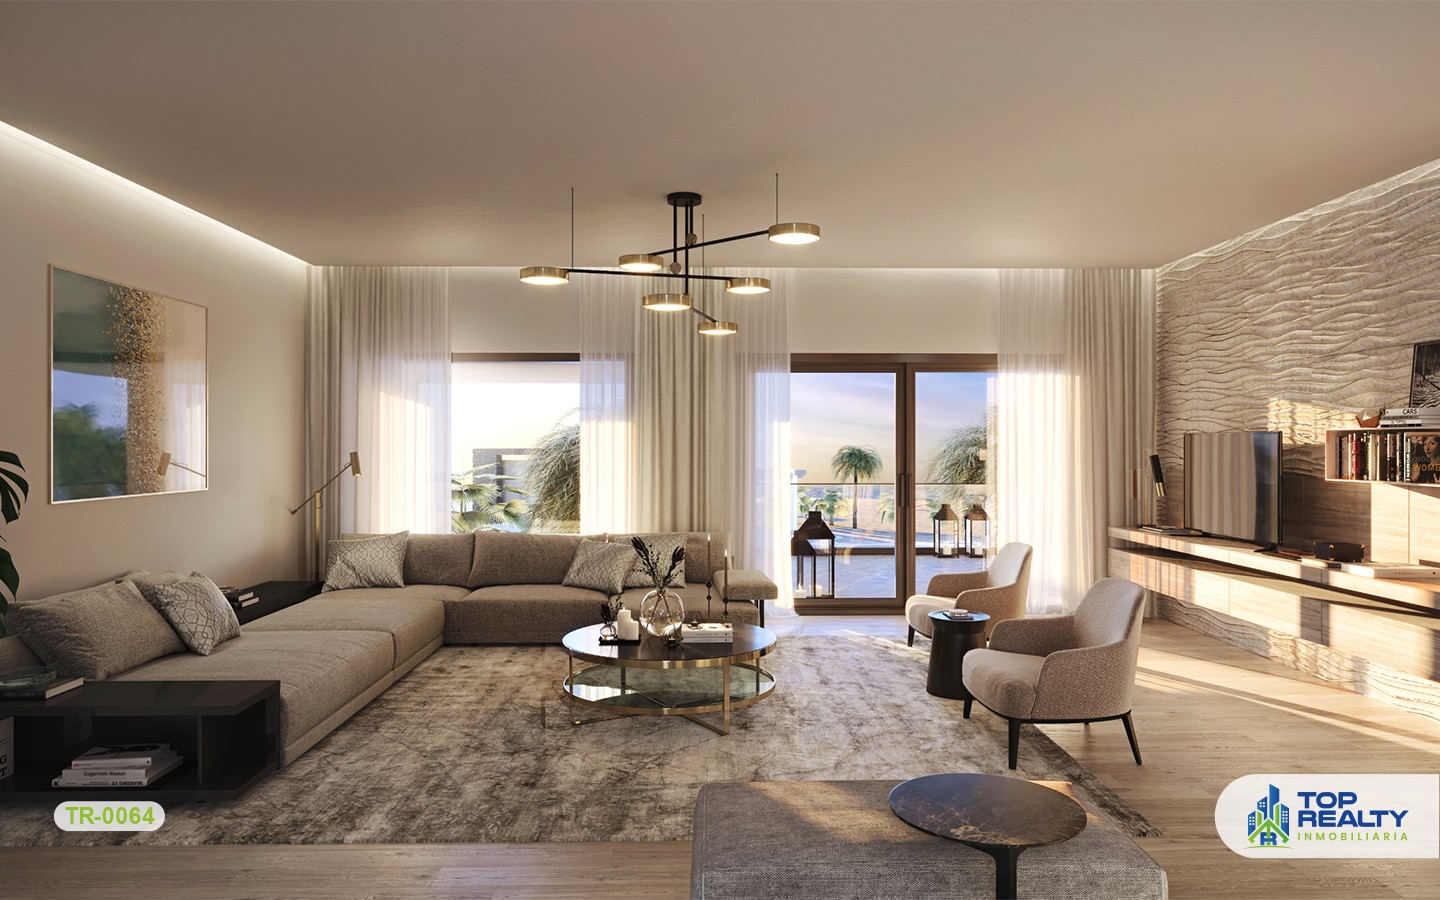 apartamentos - TR-0064: Diseñado para vivir un estilo de vida único y majestuoso frente al mar 8